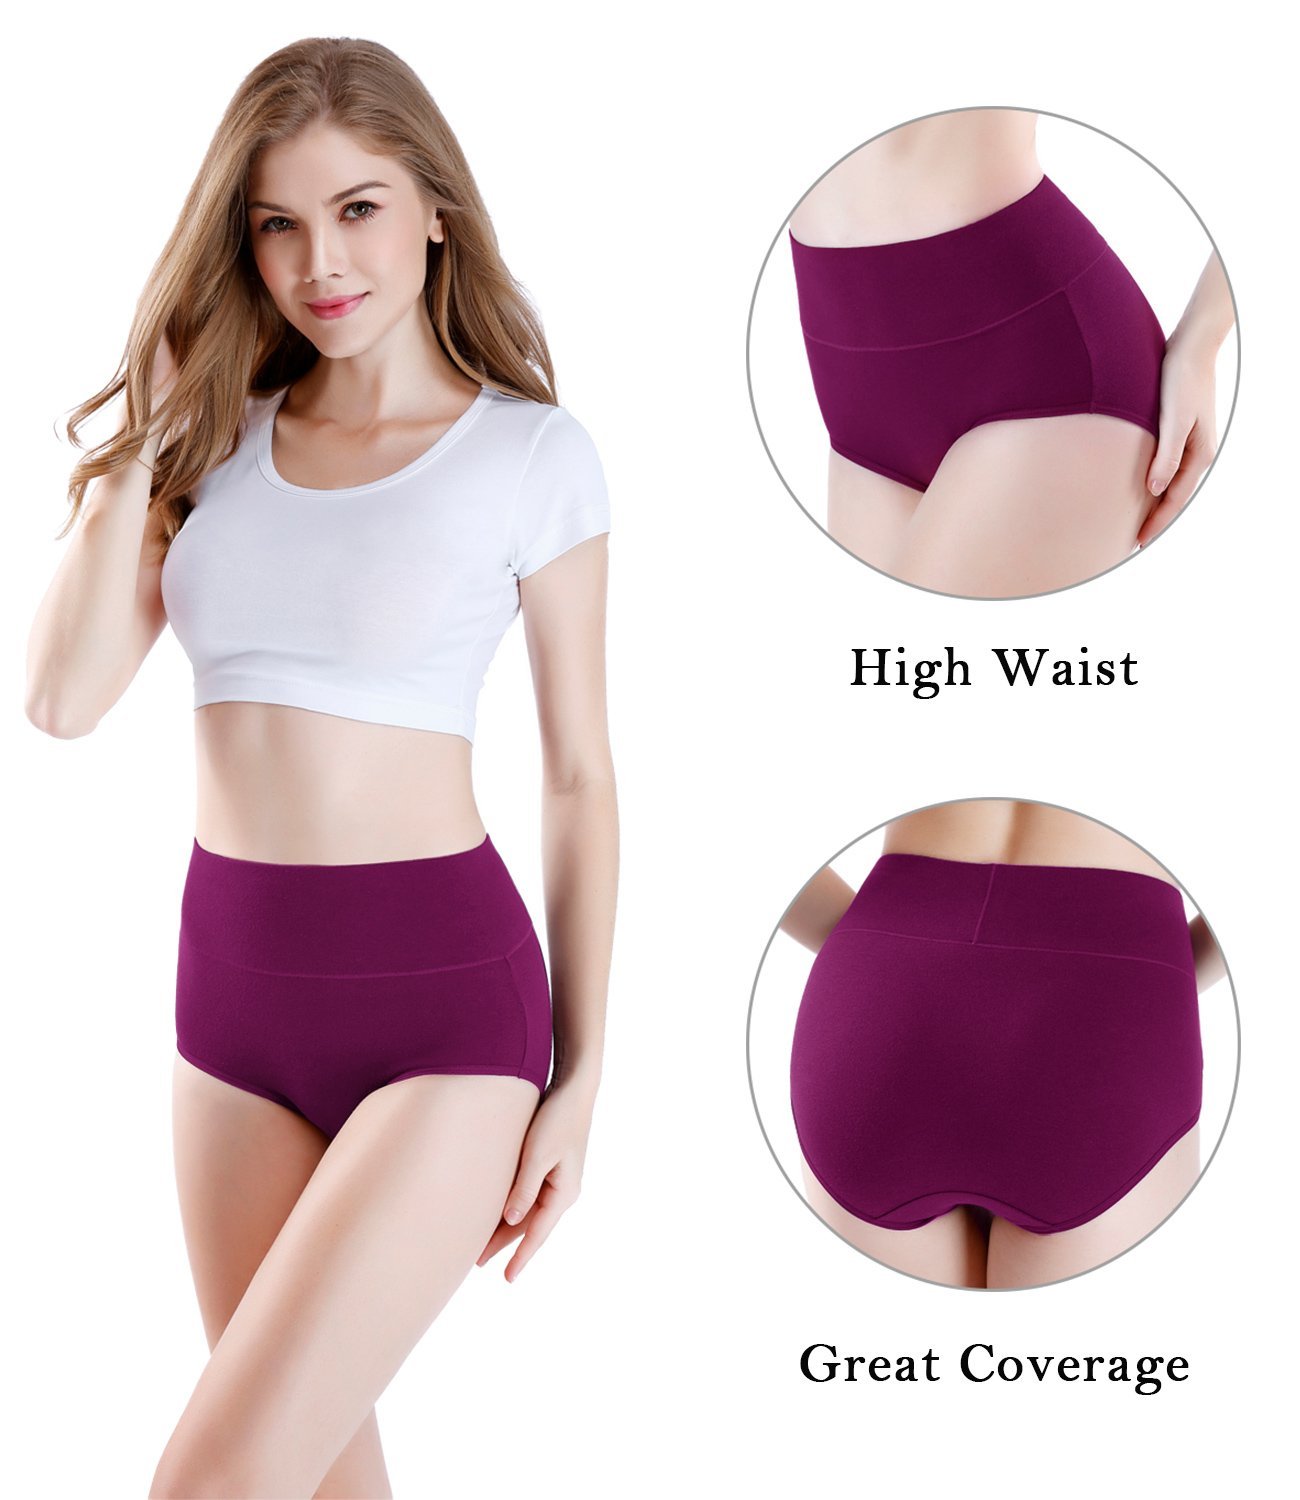 wirarpa Women’s Super High Waisted Cotton Briefs Underwear 5 Pack